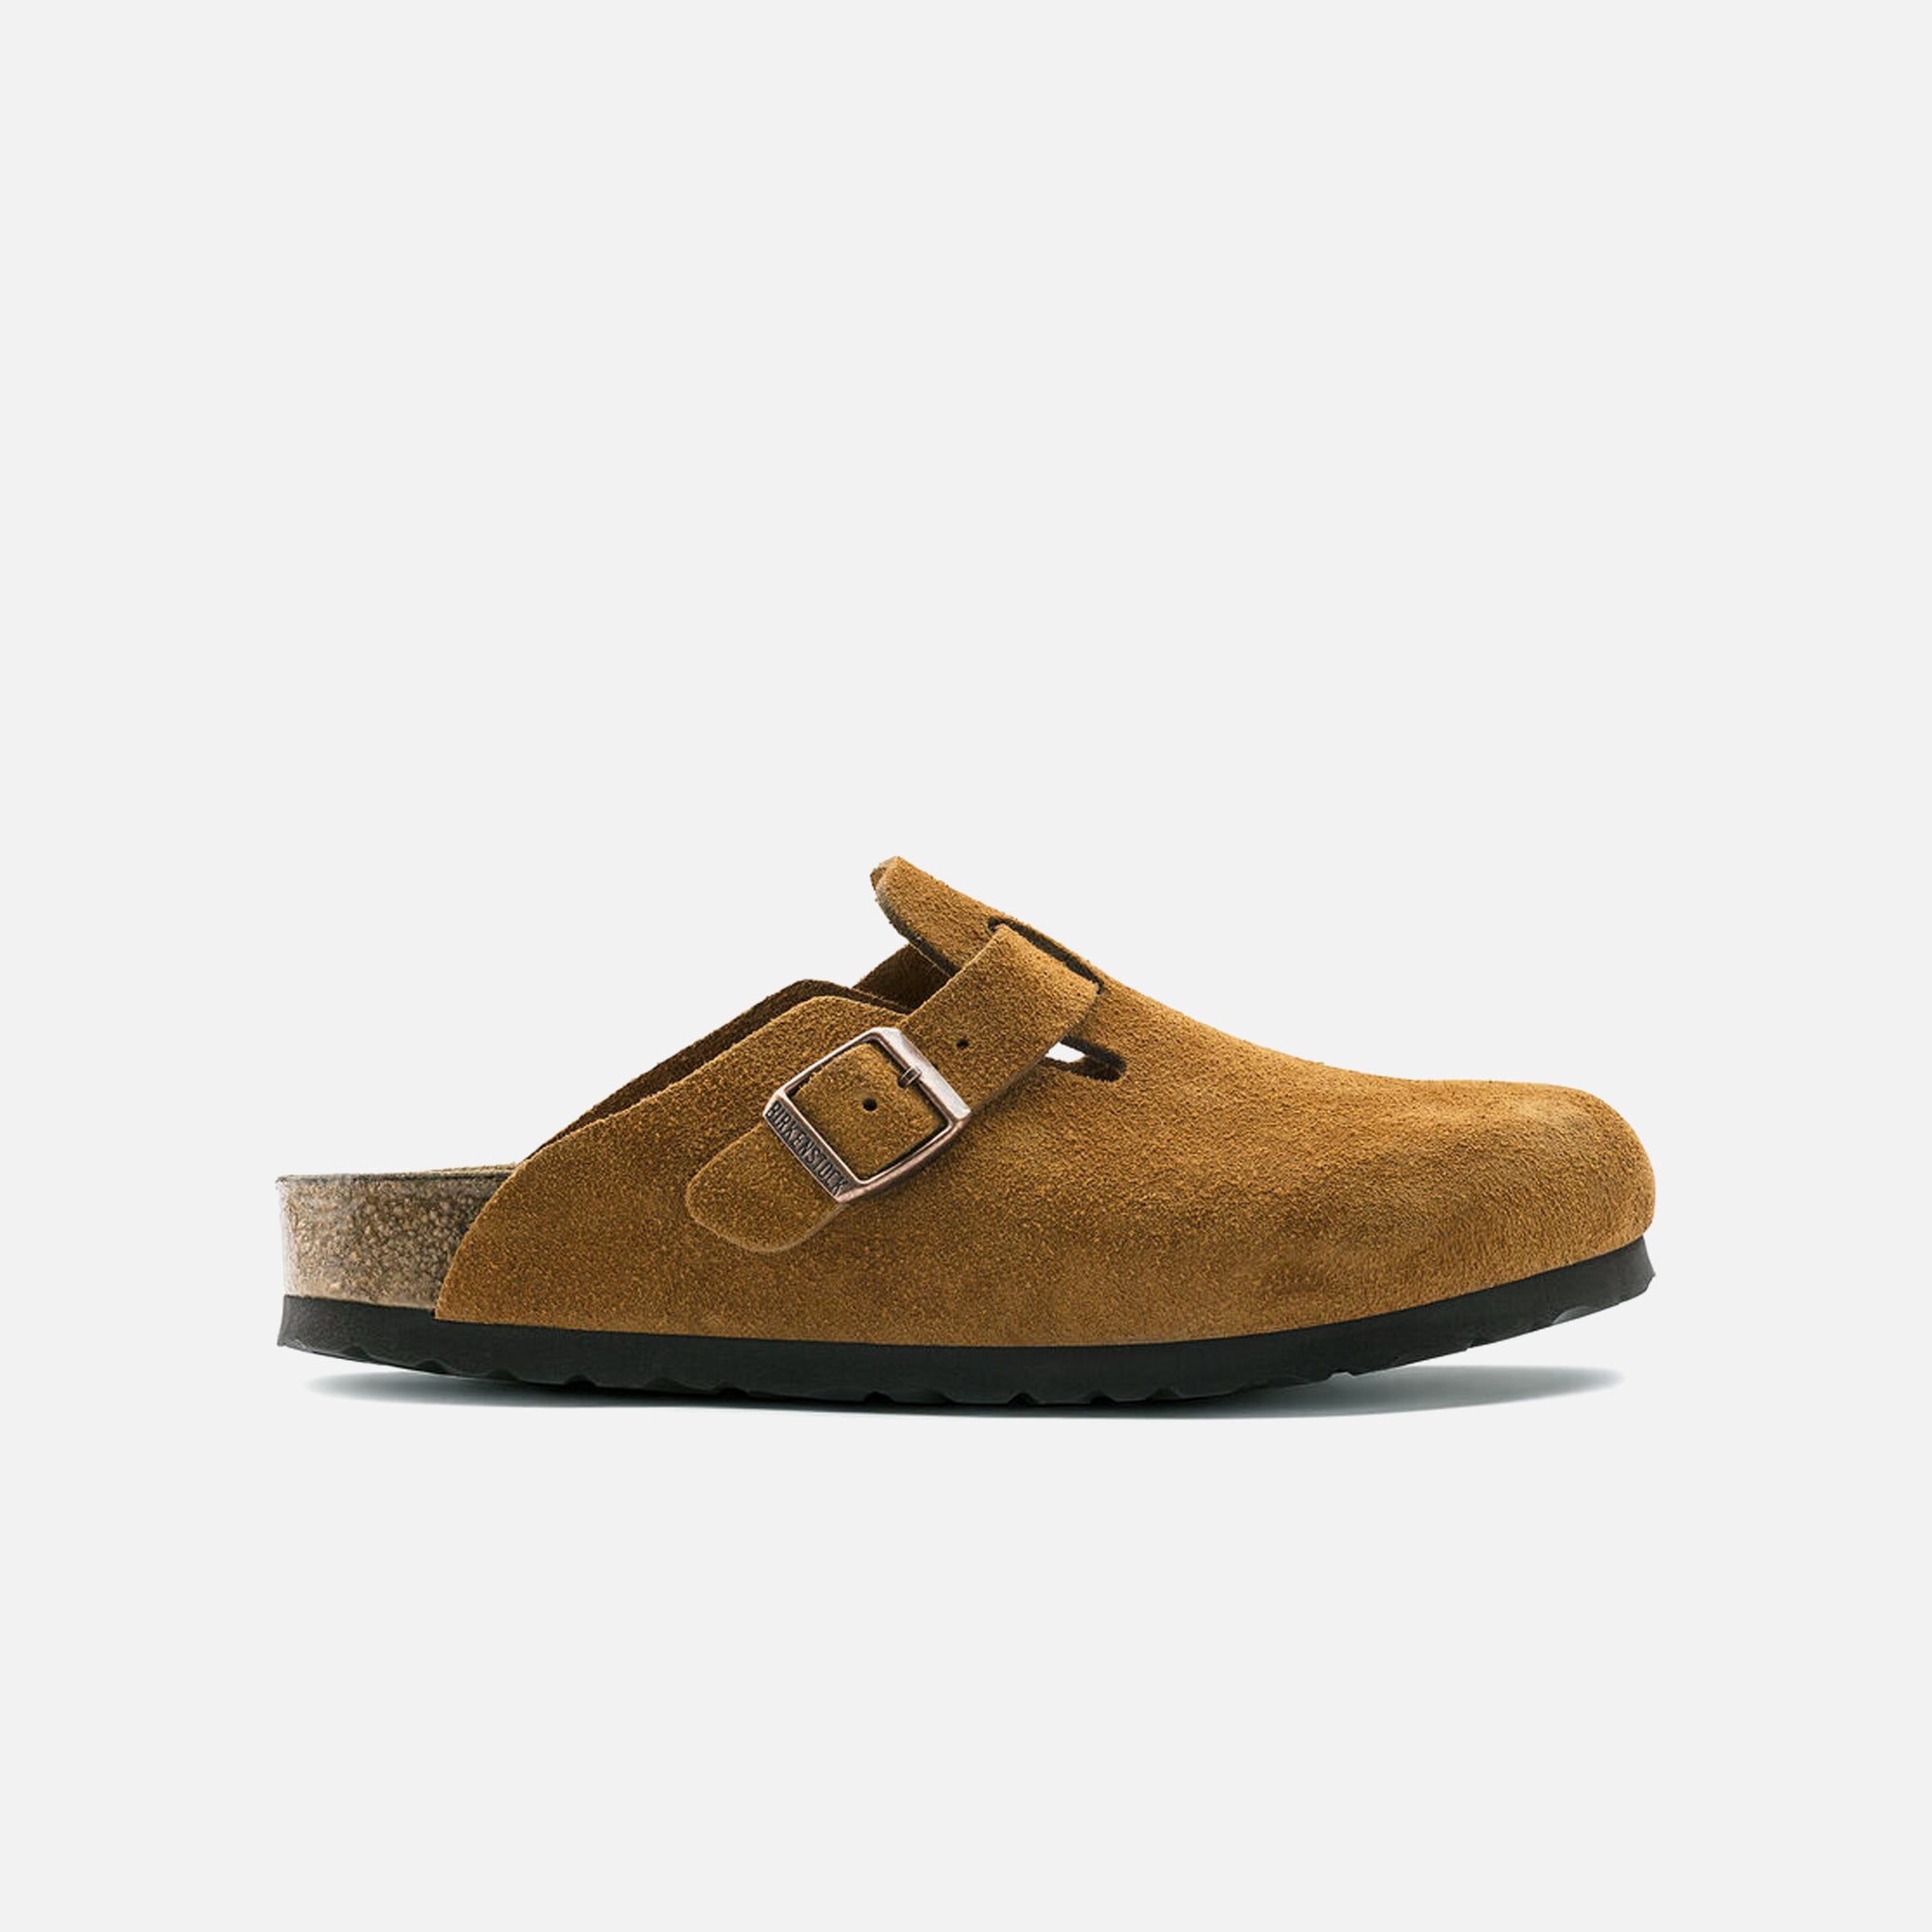 Men's Birkenstock Arizona Soft Footbed Sandal | Suede Leather Sandal -  OutdoorSports.com